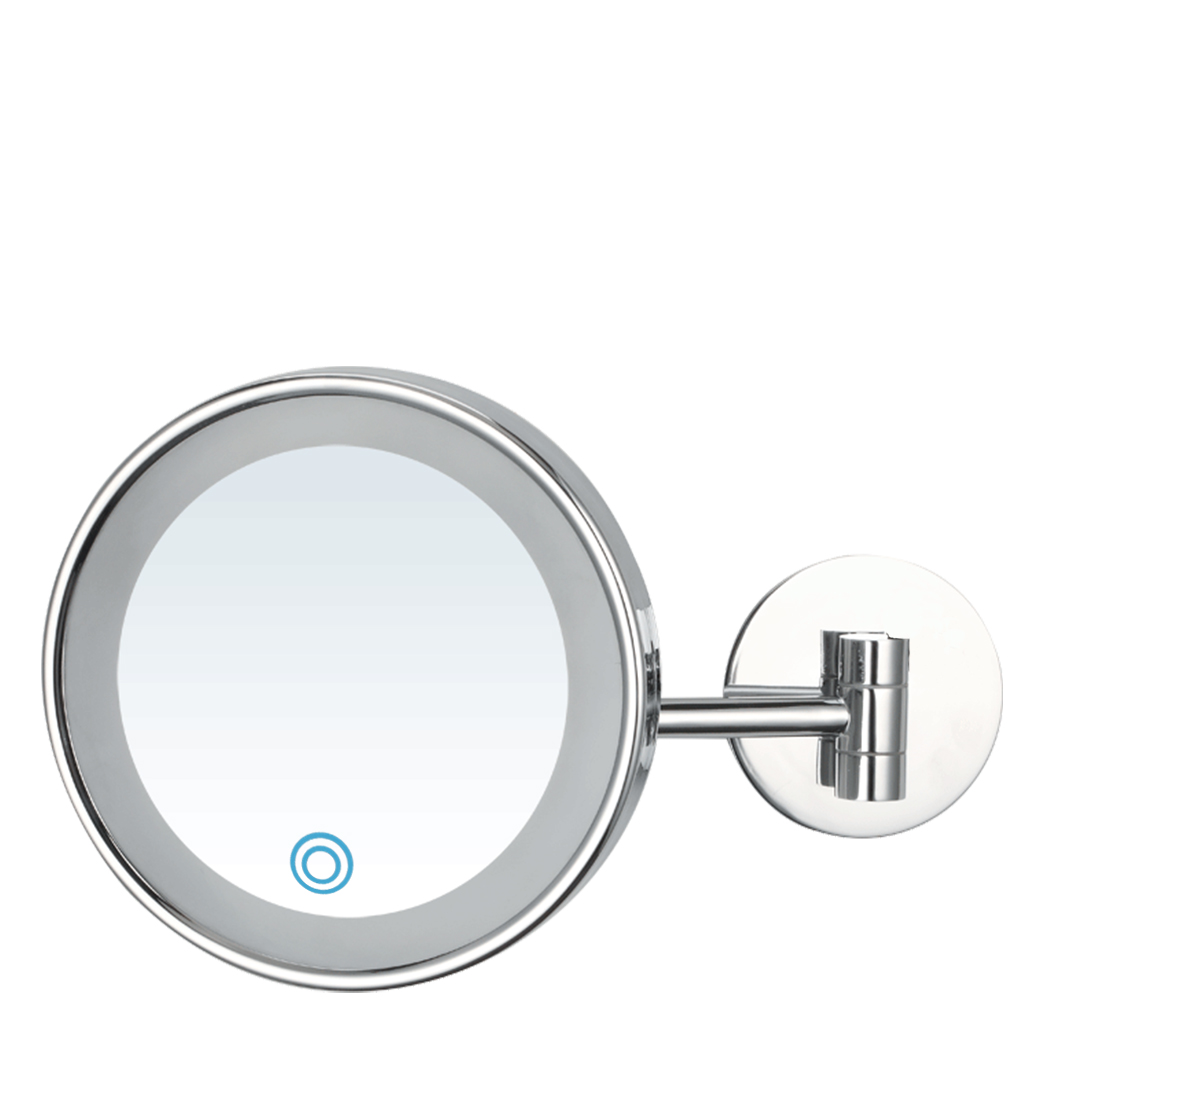 White LED 3X Round Wall Mounted Mirror
